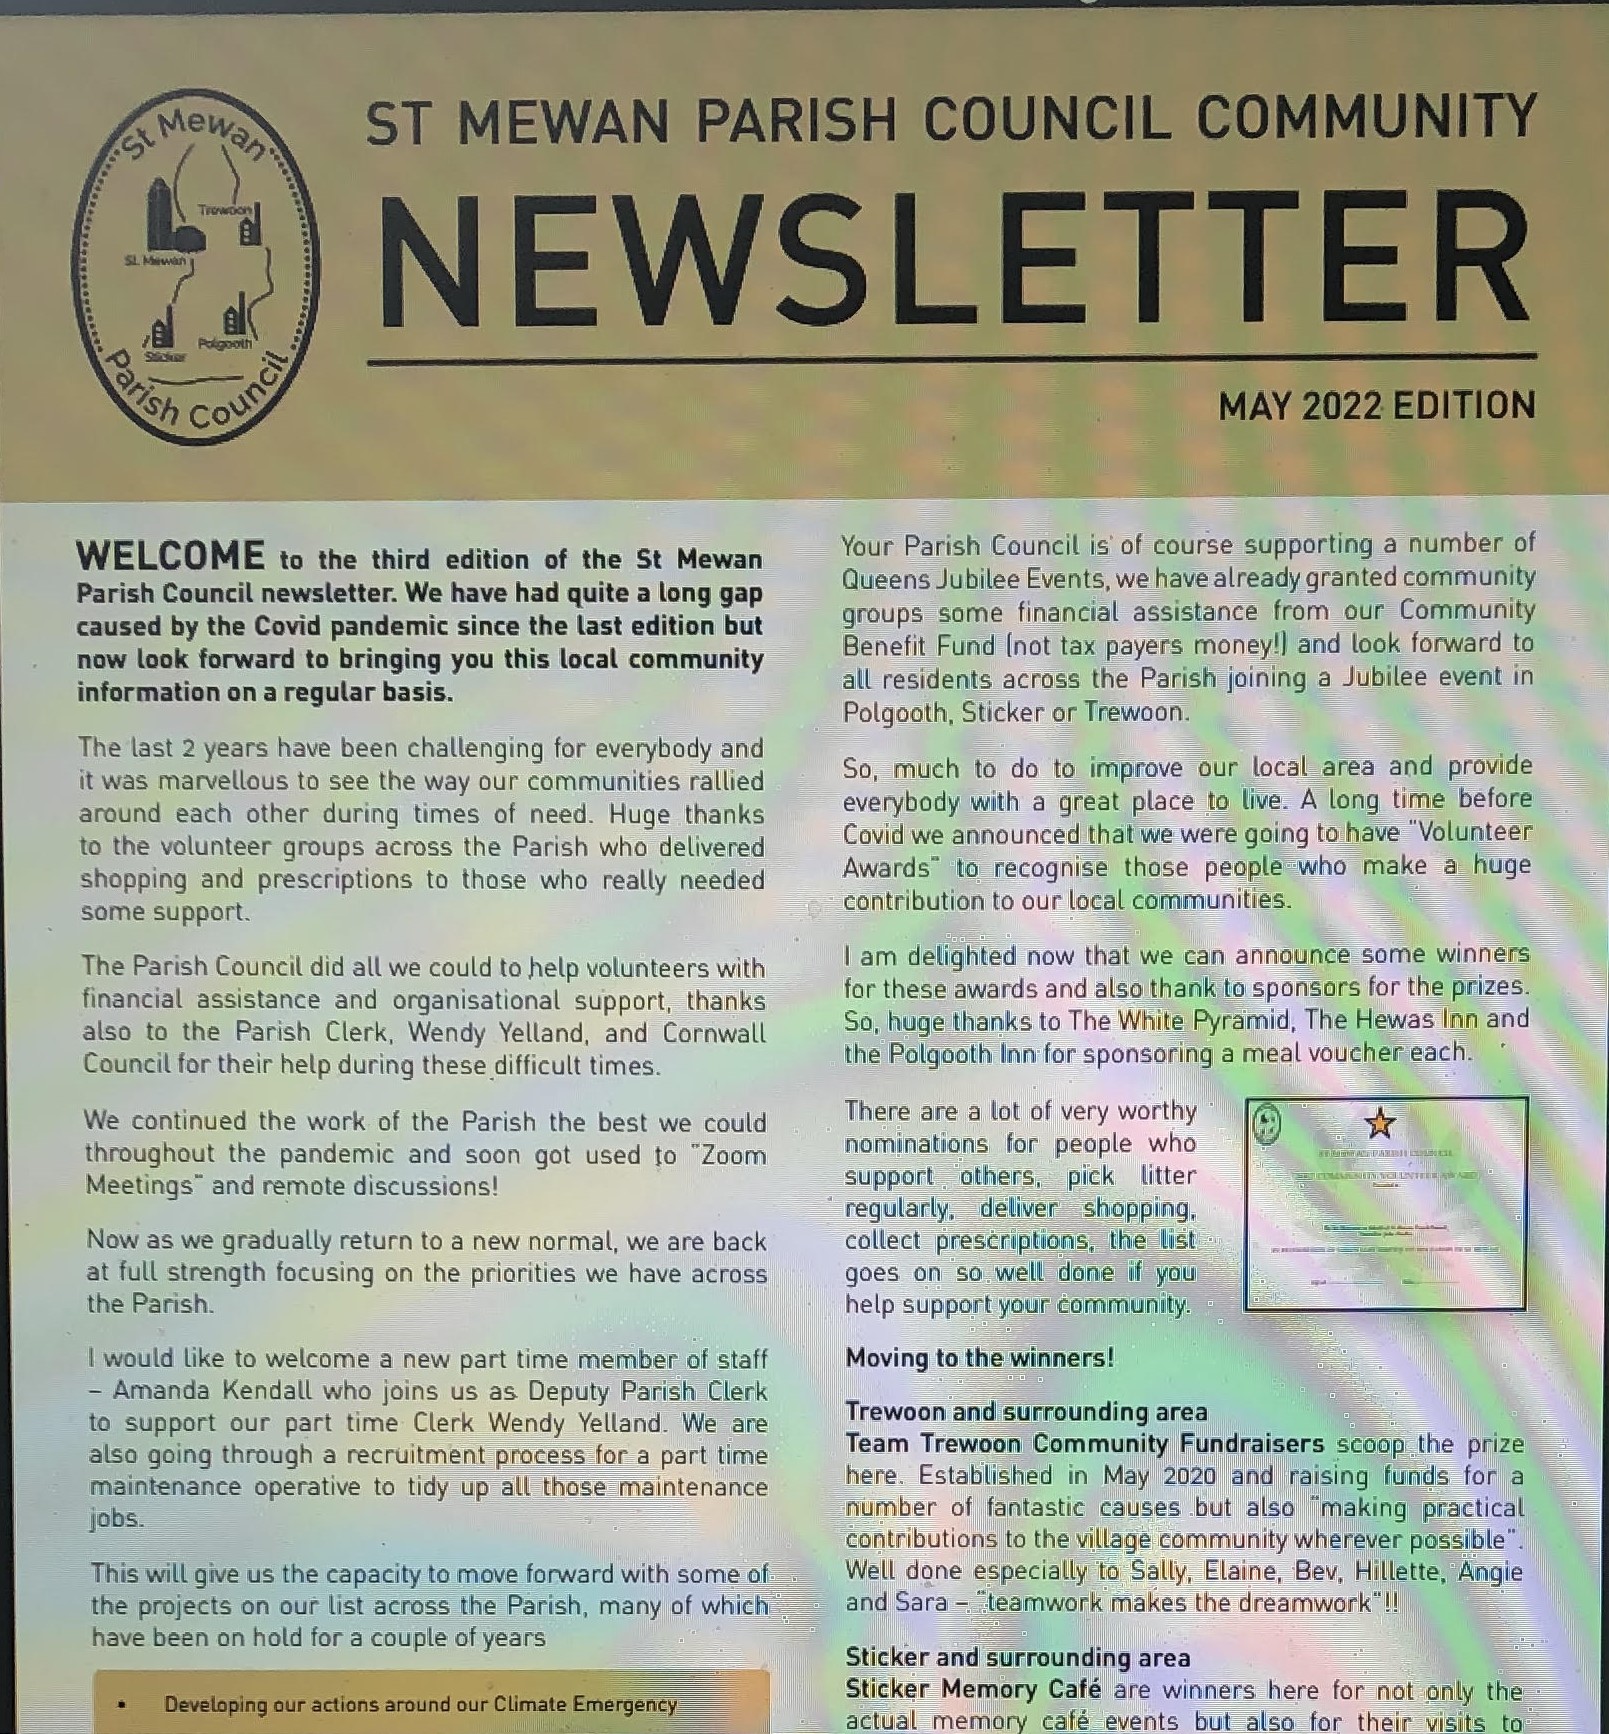 Parish Council Community Newsletter